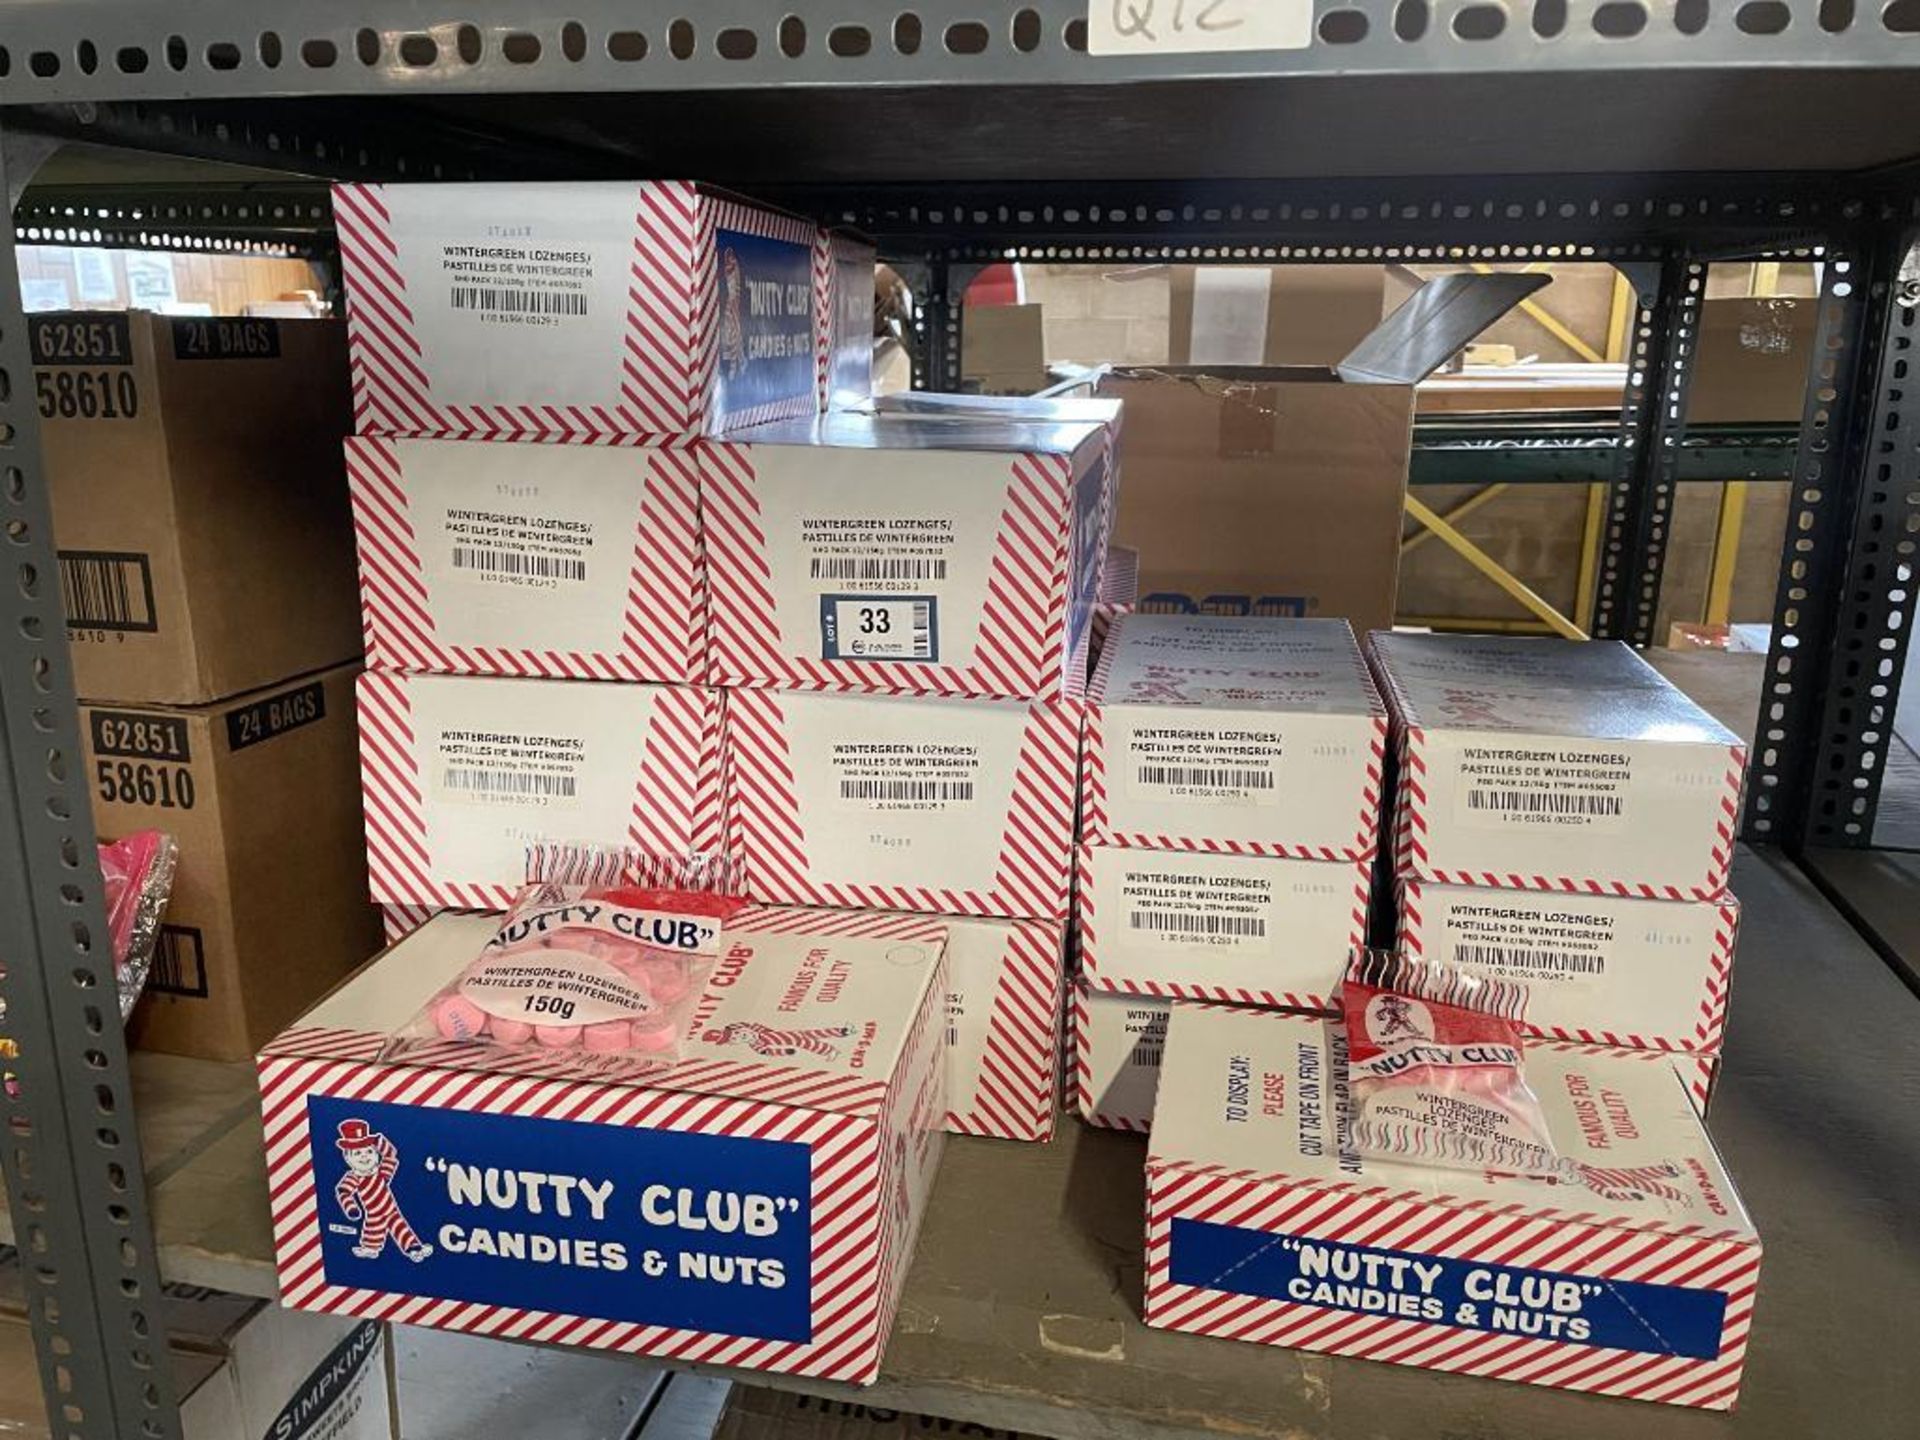 (22) BOXES OF NUTTY CLUB WINTERGREEN LOZENGES, (15) 12/150G PER BOX & (7) 12/50G PER BOX